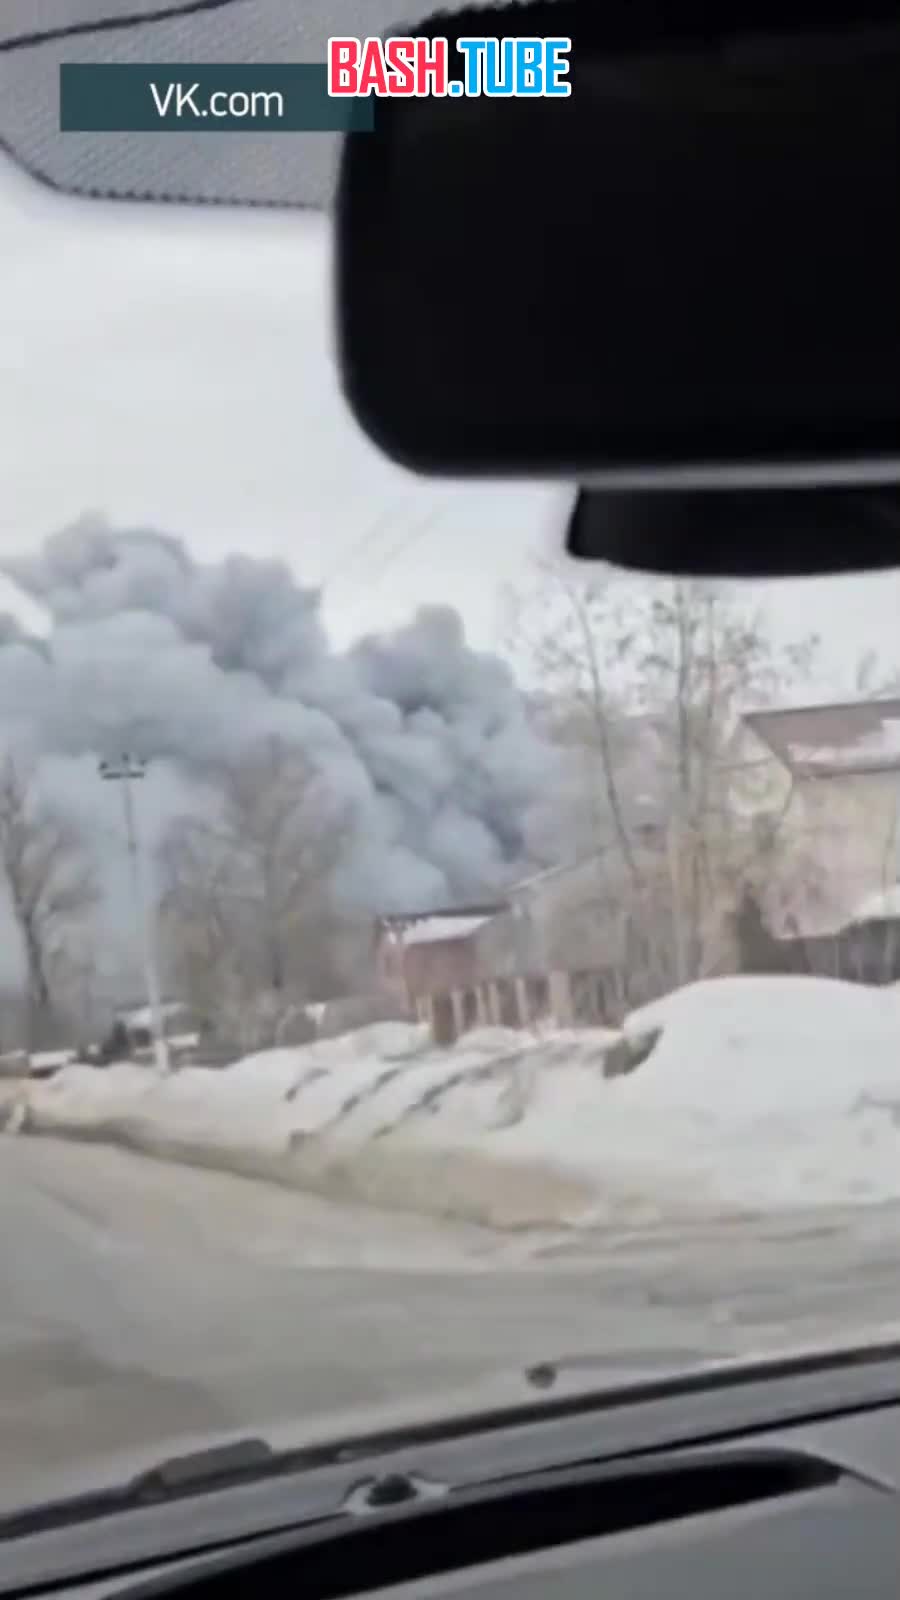  Сильный пожар в Раменском округе Подмосковья - огонь охватил 700 квадратных метров